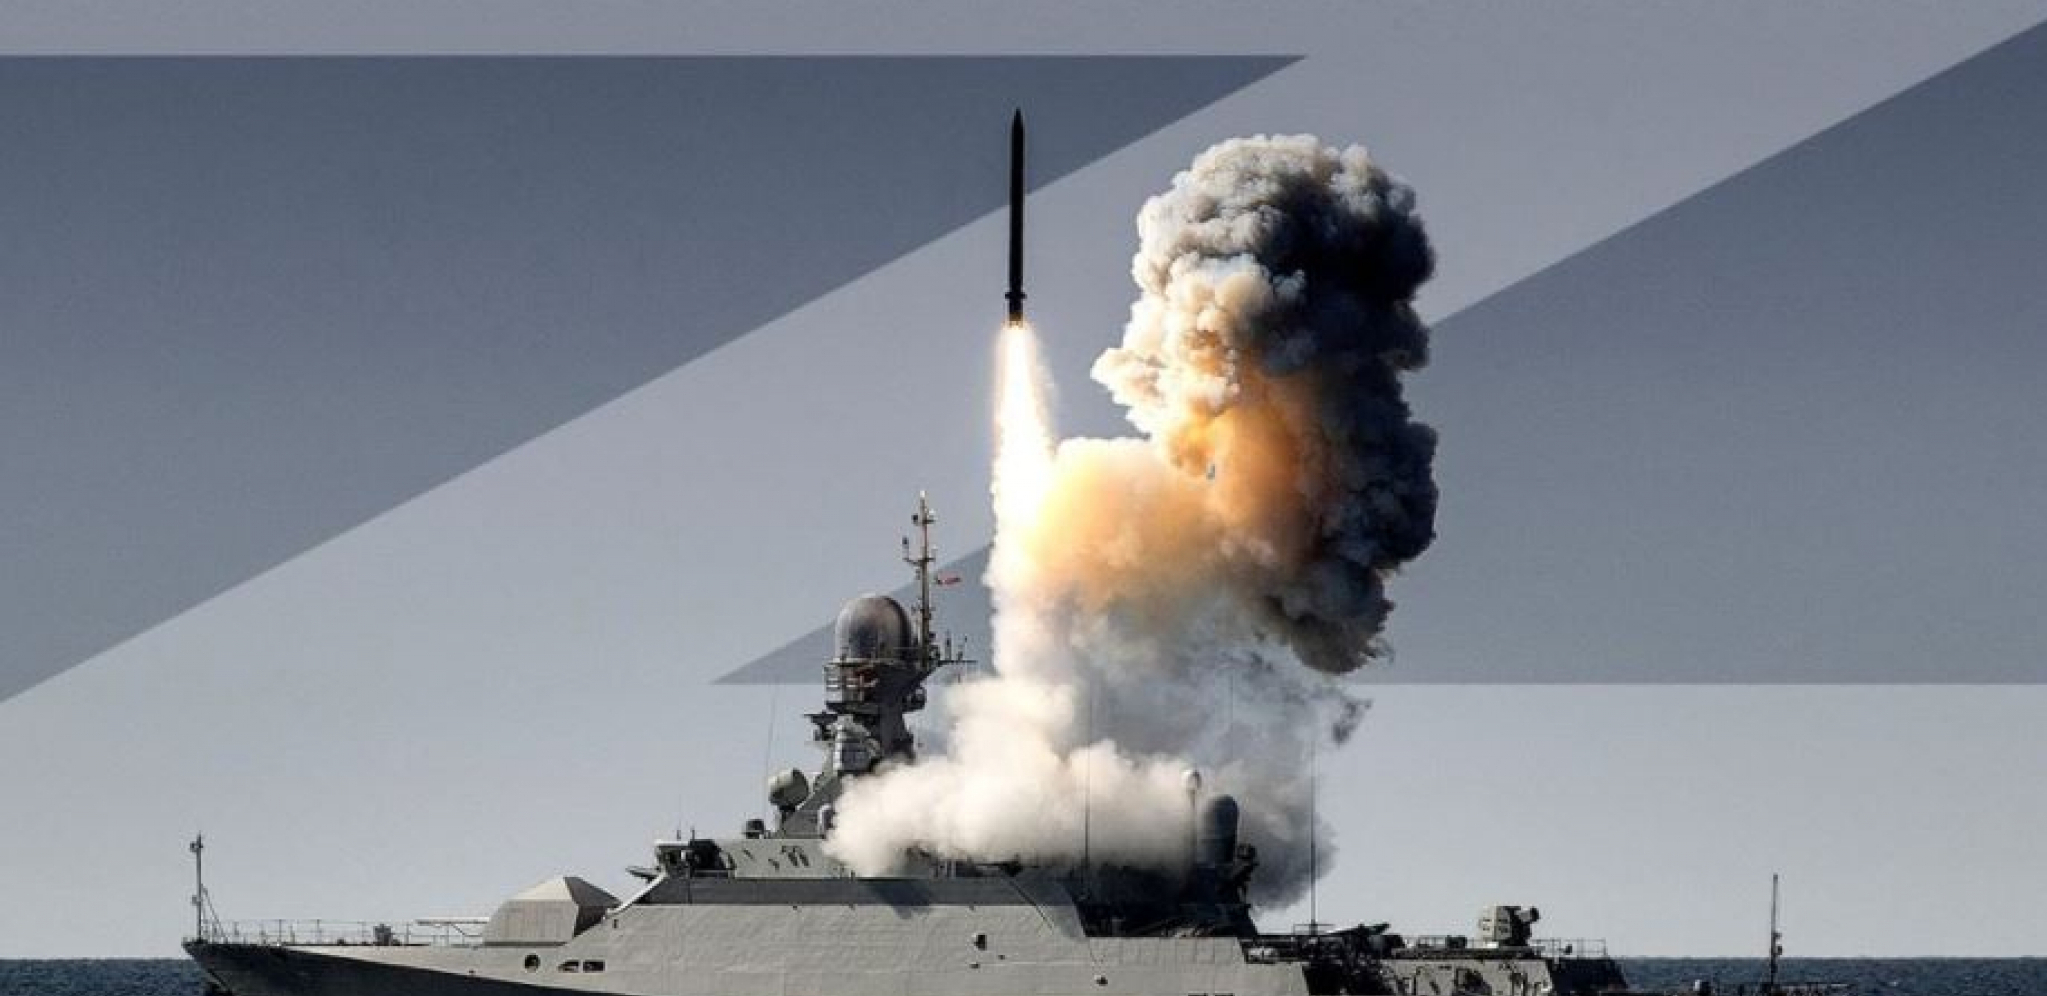 ISPALJENE SA RAZDALJINE OD 2000 KILOMETARA Brodovi iz Kaspijskog mora uništili ciljeve u Ukrajini raketama "Kalibr-NK" (VIDEO)